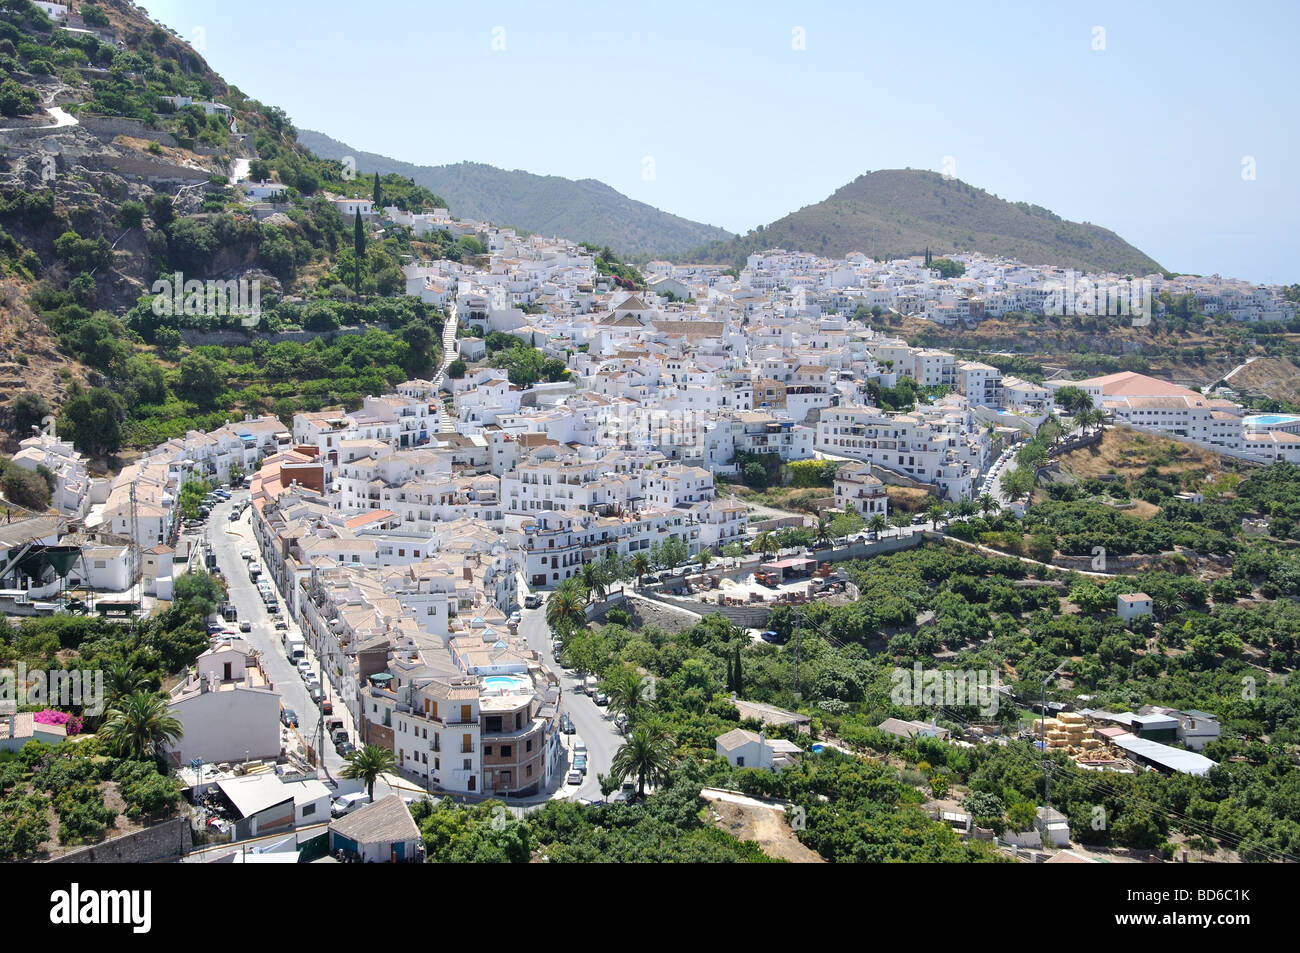 View of pretty Andalusian village of Frigiliana, Costa del Sol, Malaga Province, Andalucia, Spain Stock Photo